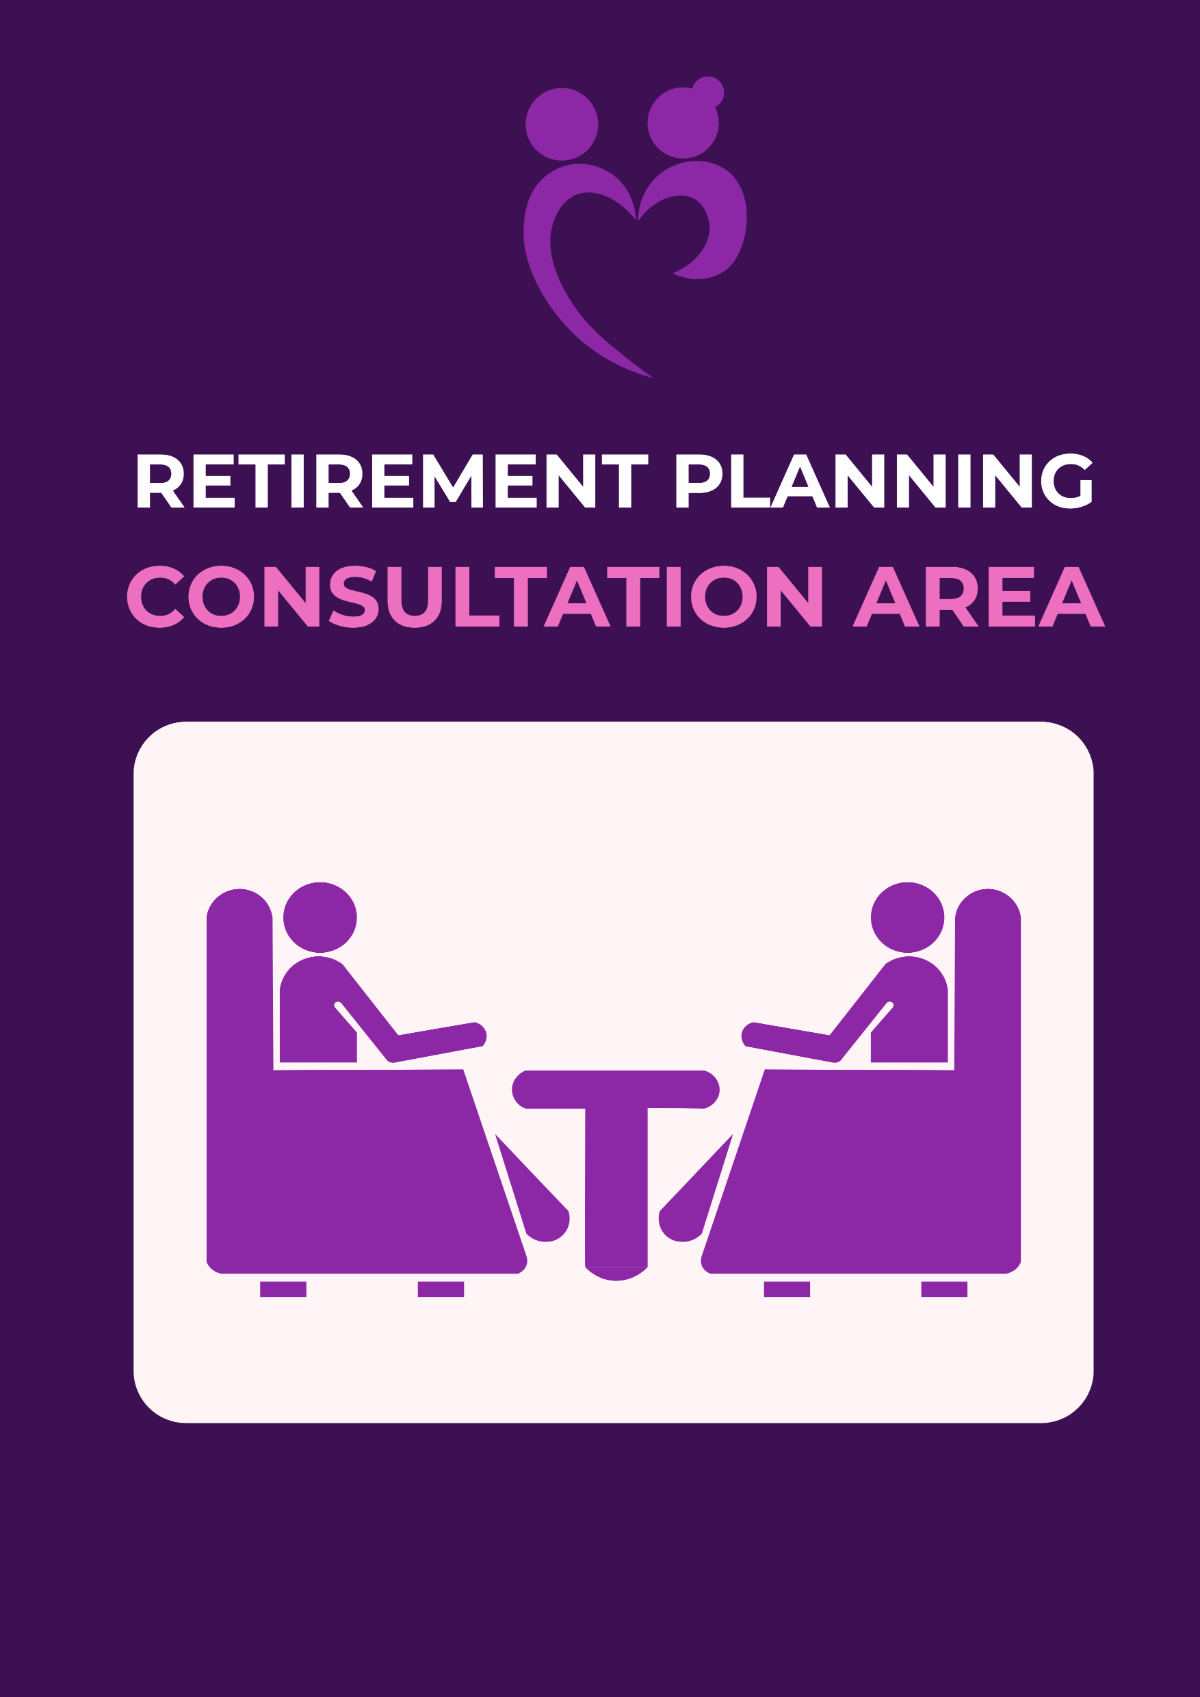 Retirement Planning Consultation Area Signage